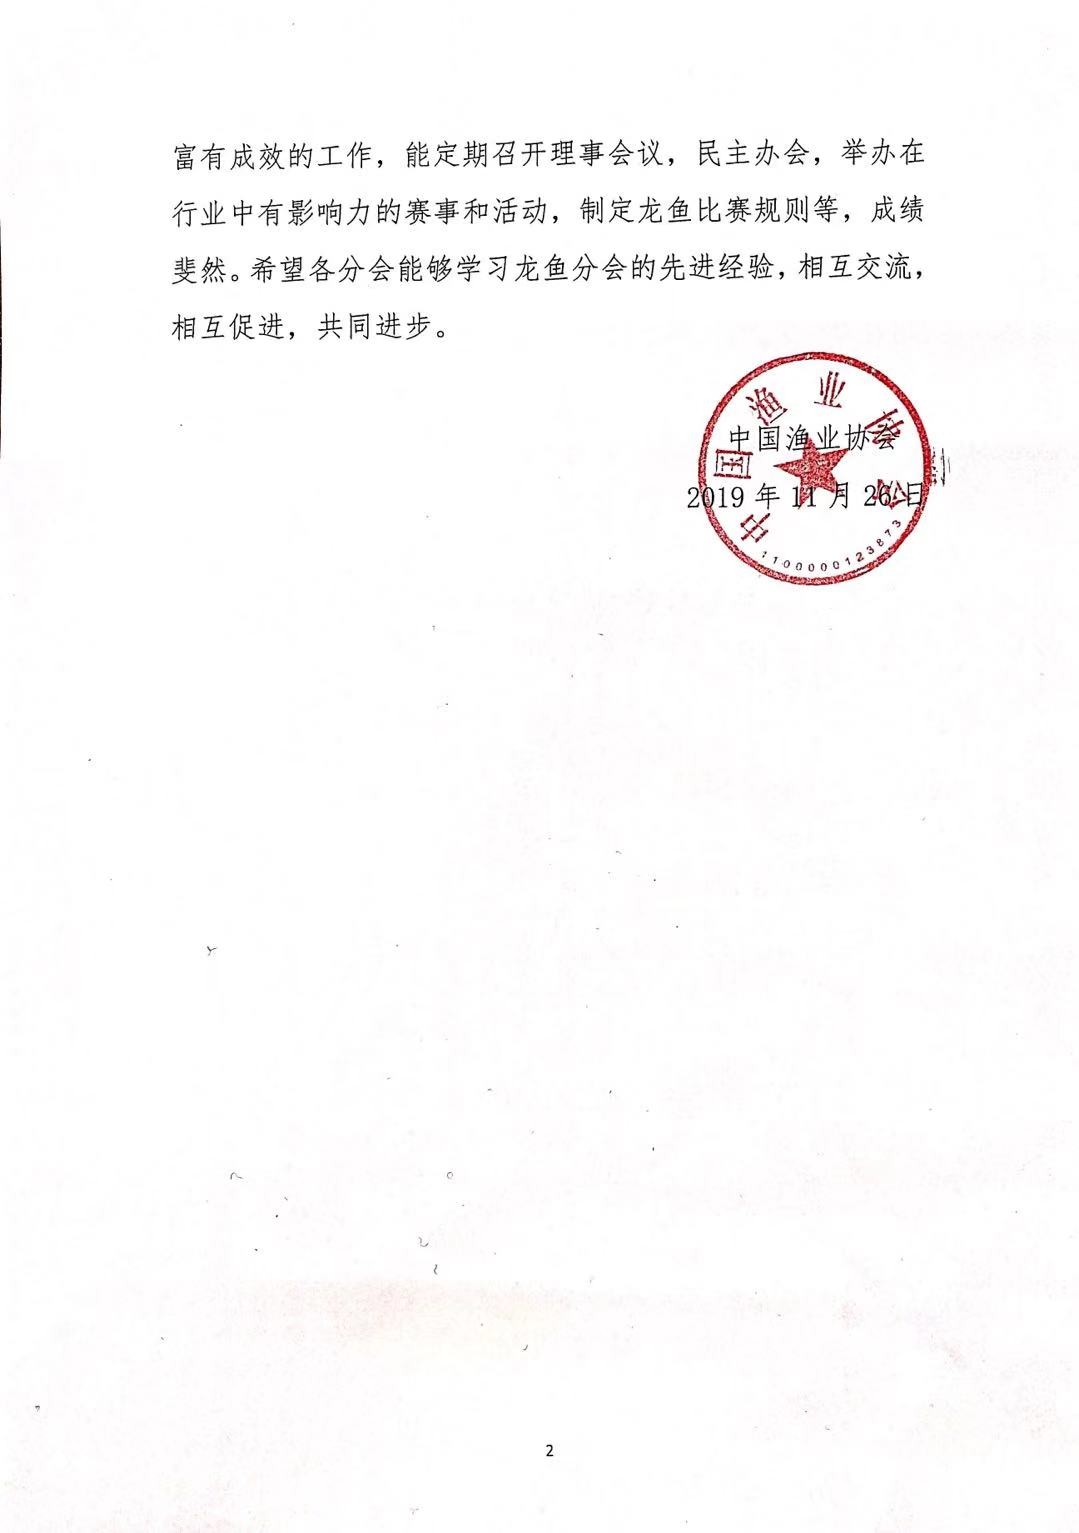 中国渔业协会关于2019长城杯龙鱼大赛死鱼事件的批复